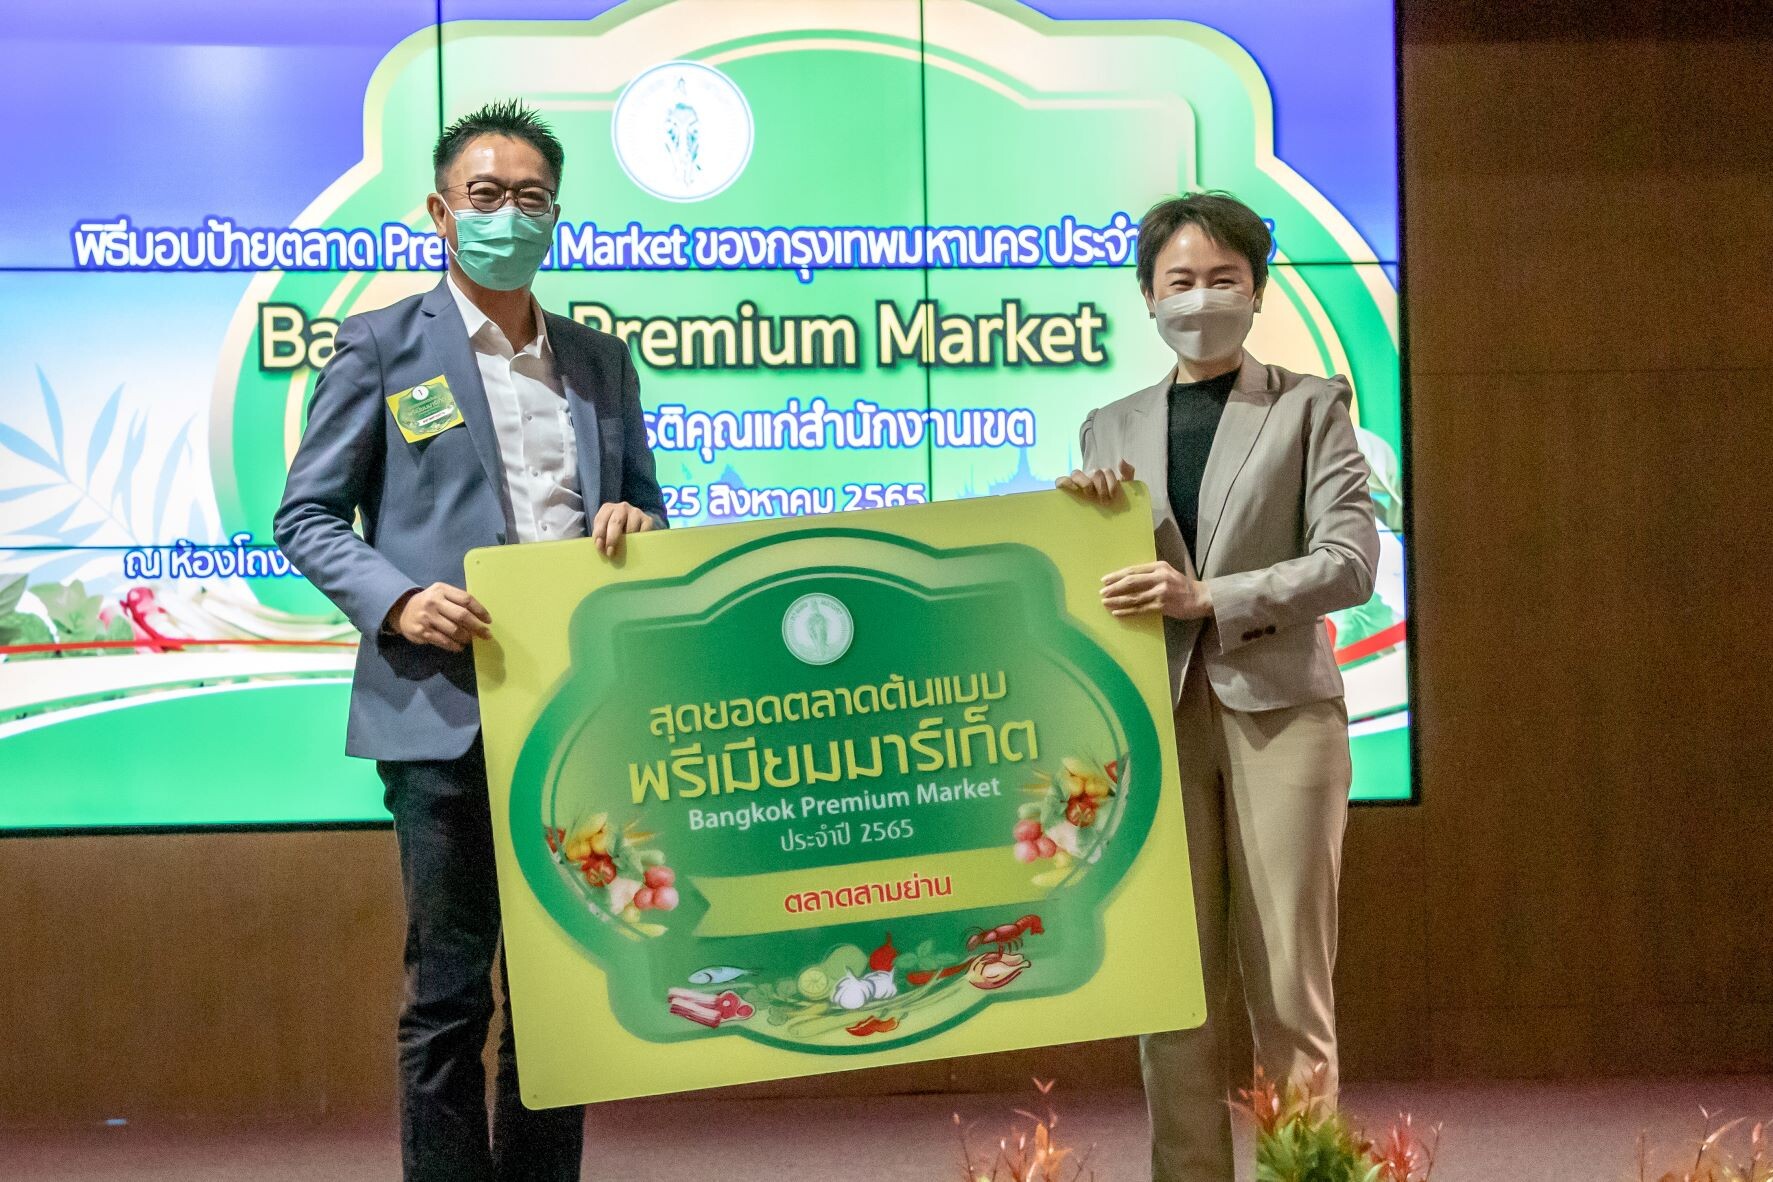 ตลาดสามย่าน รับ 2 รางวัลการันตีคุณภาพ รางวัล "ตลาดต้นแบบพรีเมียมมาร์เก็ต (Bangkok Premium Market)" และ รางวัลมาตรฐานห้องน้ำสะอาดสำหรับการท่องเที่ยว